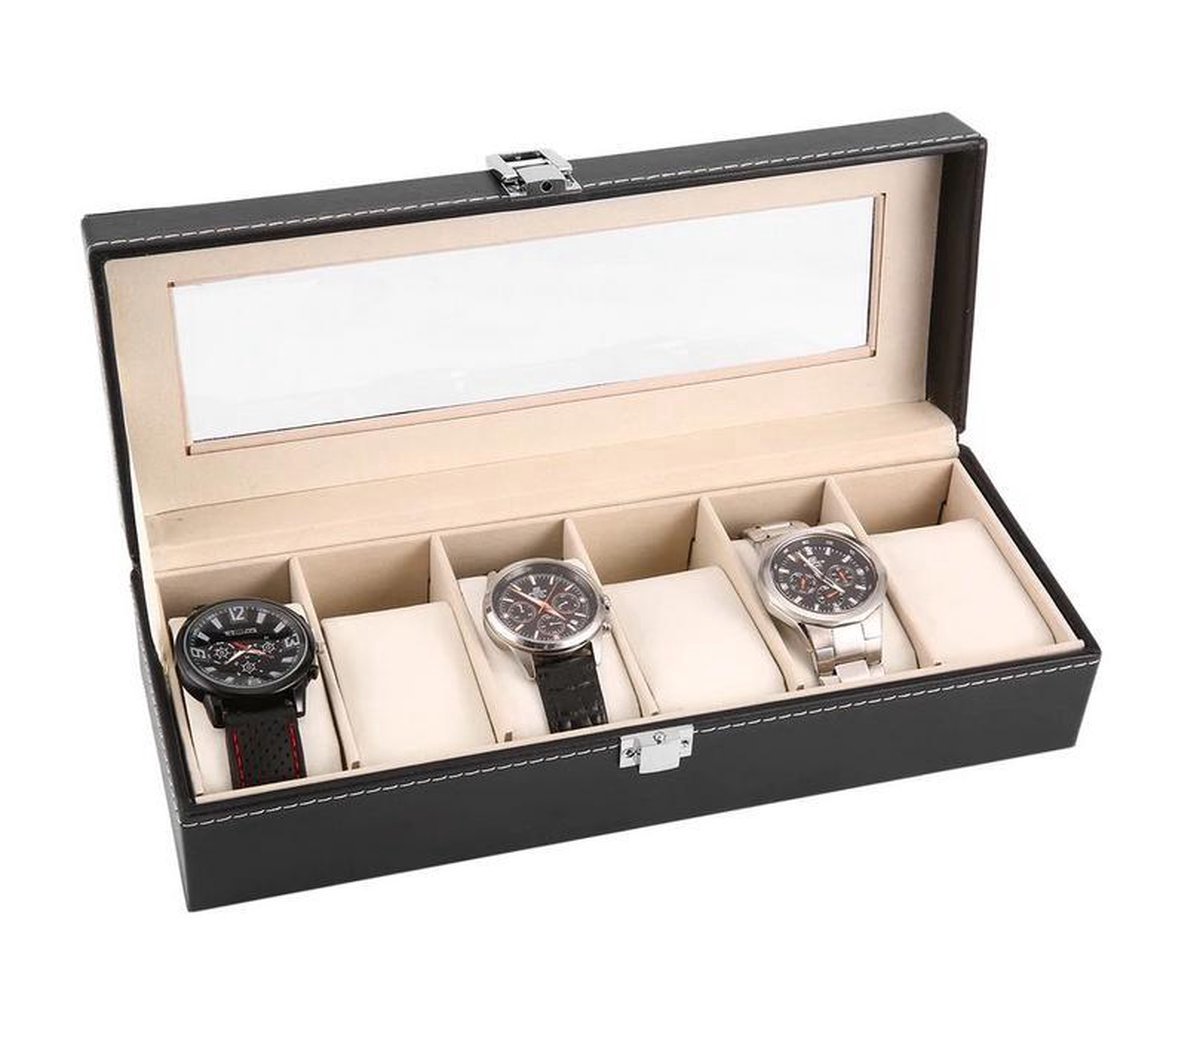 Horlogedoos | Luxe Leren Horloge Box | Geschikt voor Horloges en Sieraden | 6 Compartimenten met 6 Kussentjes | Zwart Leer V2.0